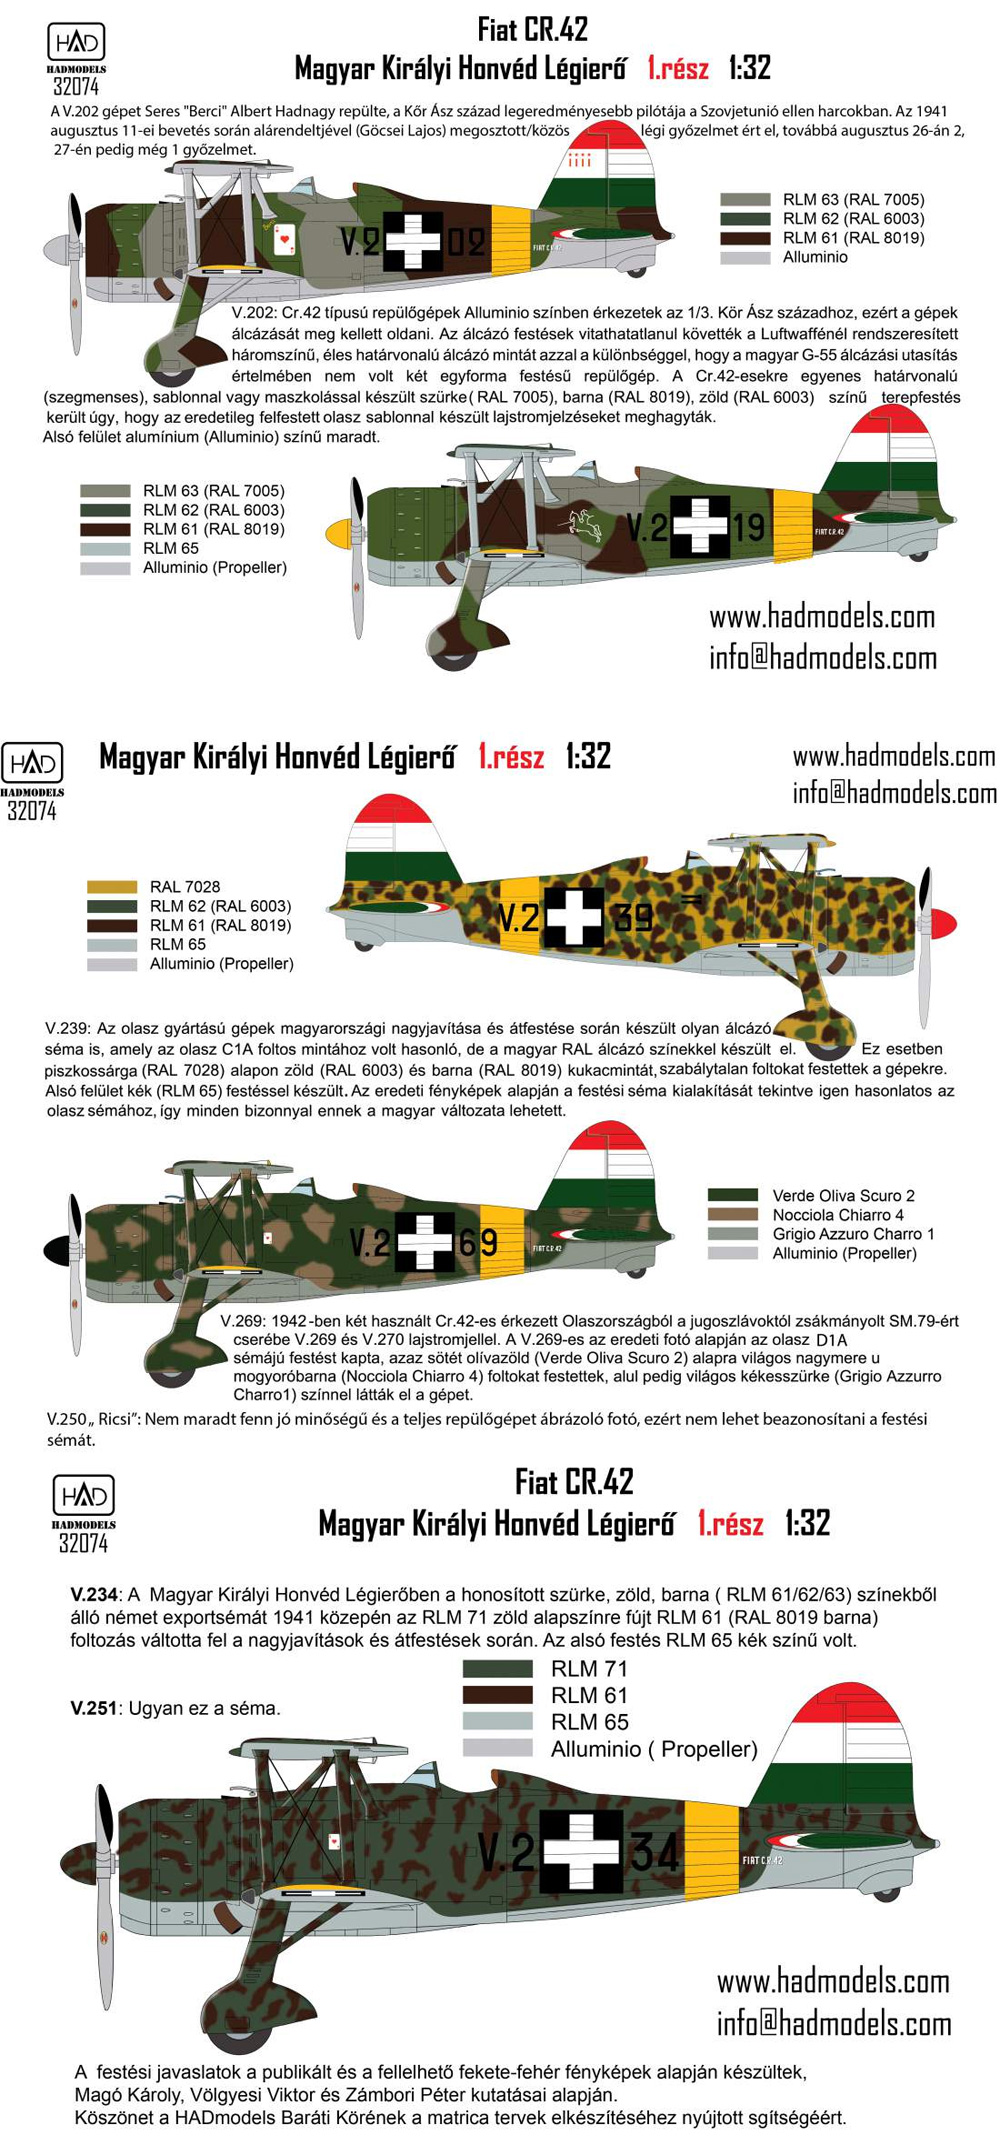 フィアット CR.42 王立ハンガリー空軍 vol.1 デカール デカール (HAD MODELS 1/32 デカール No.32074) 商品画像_3